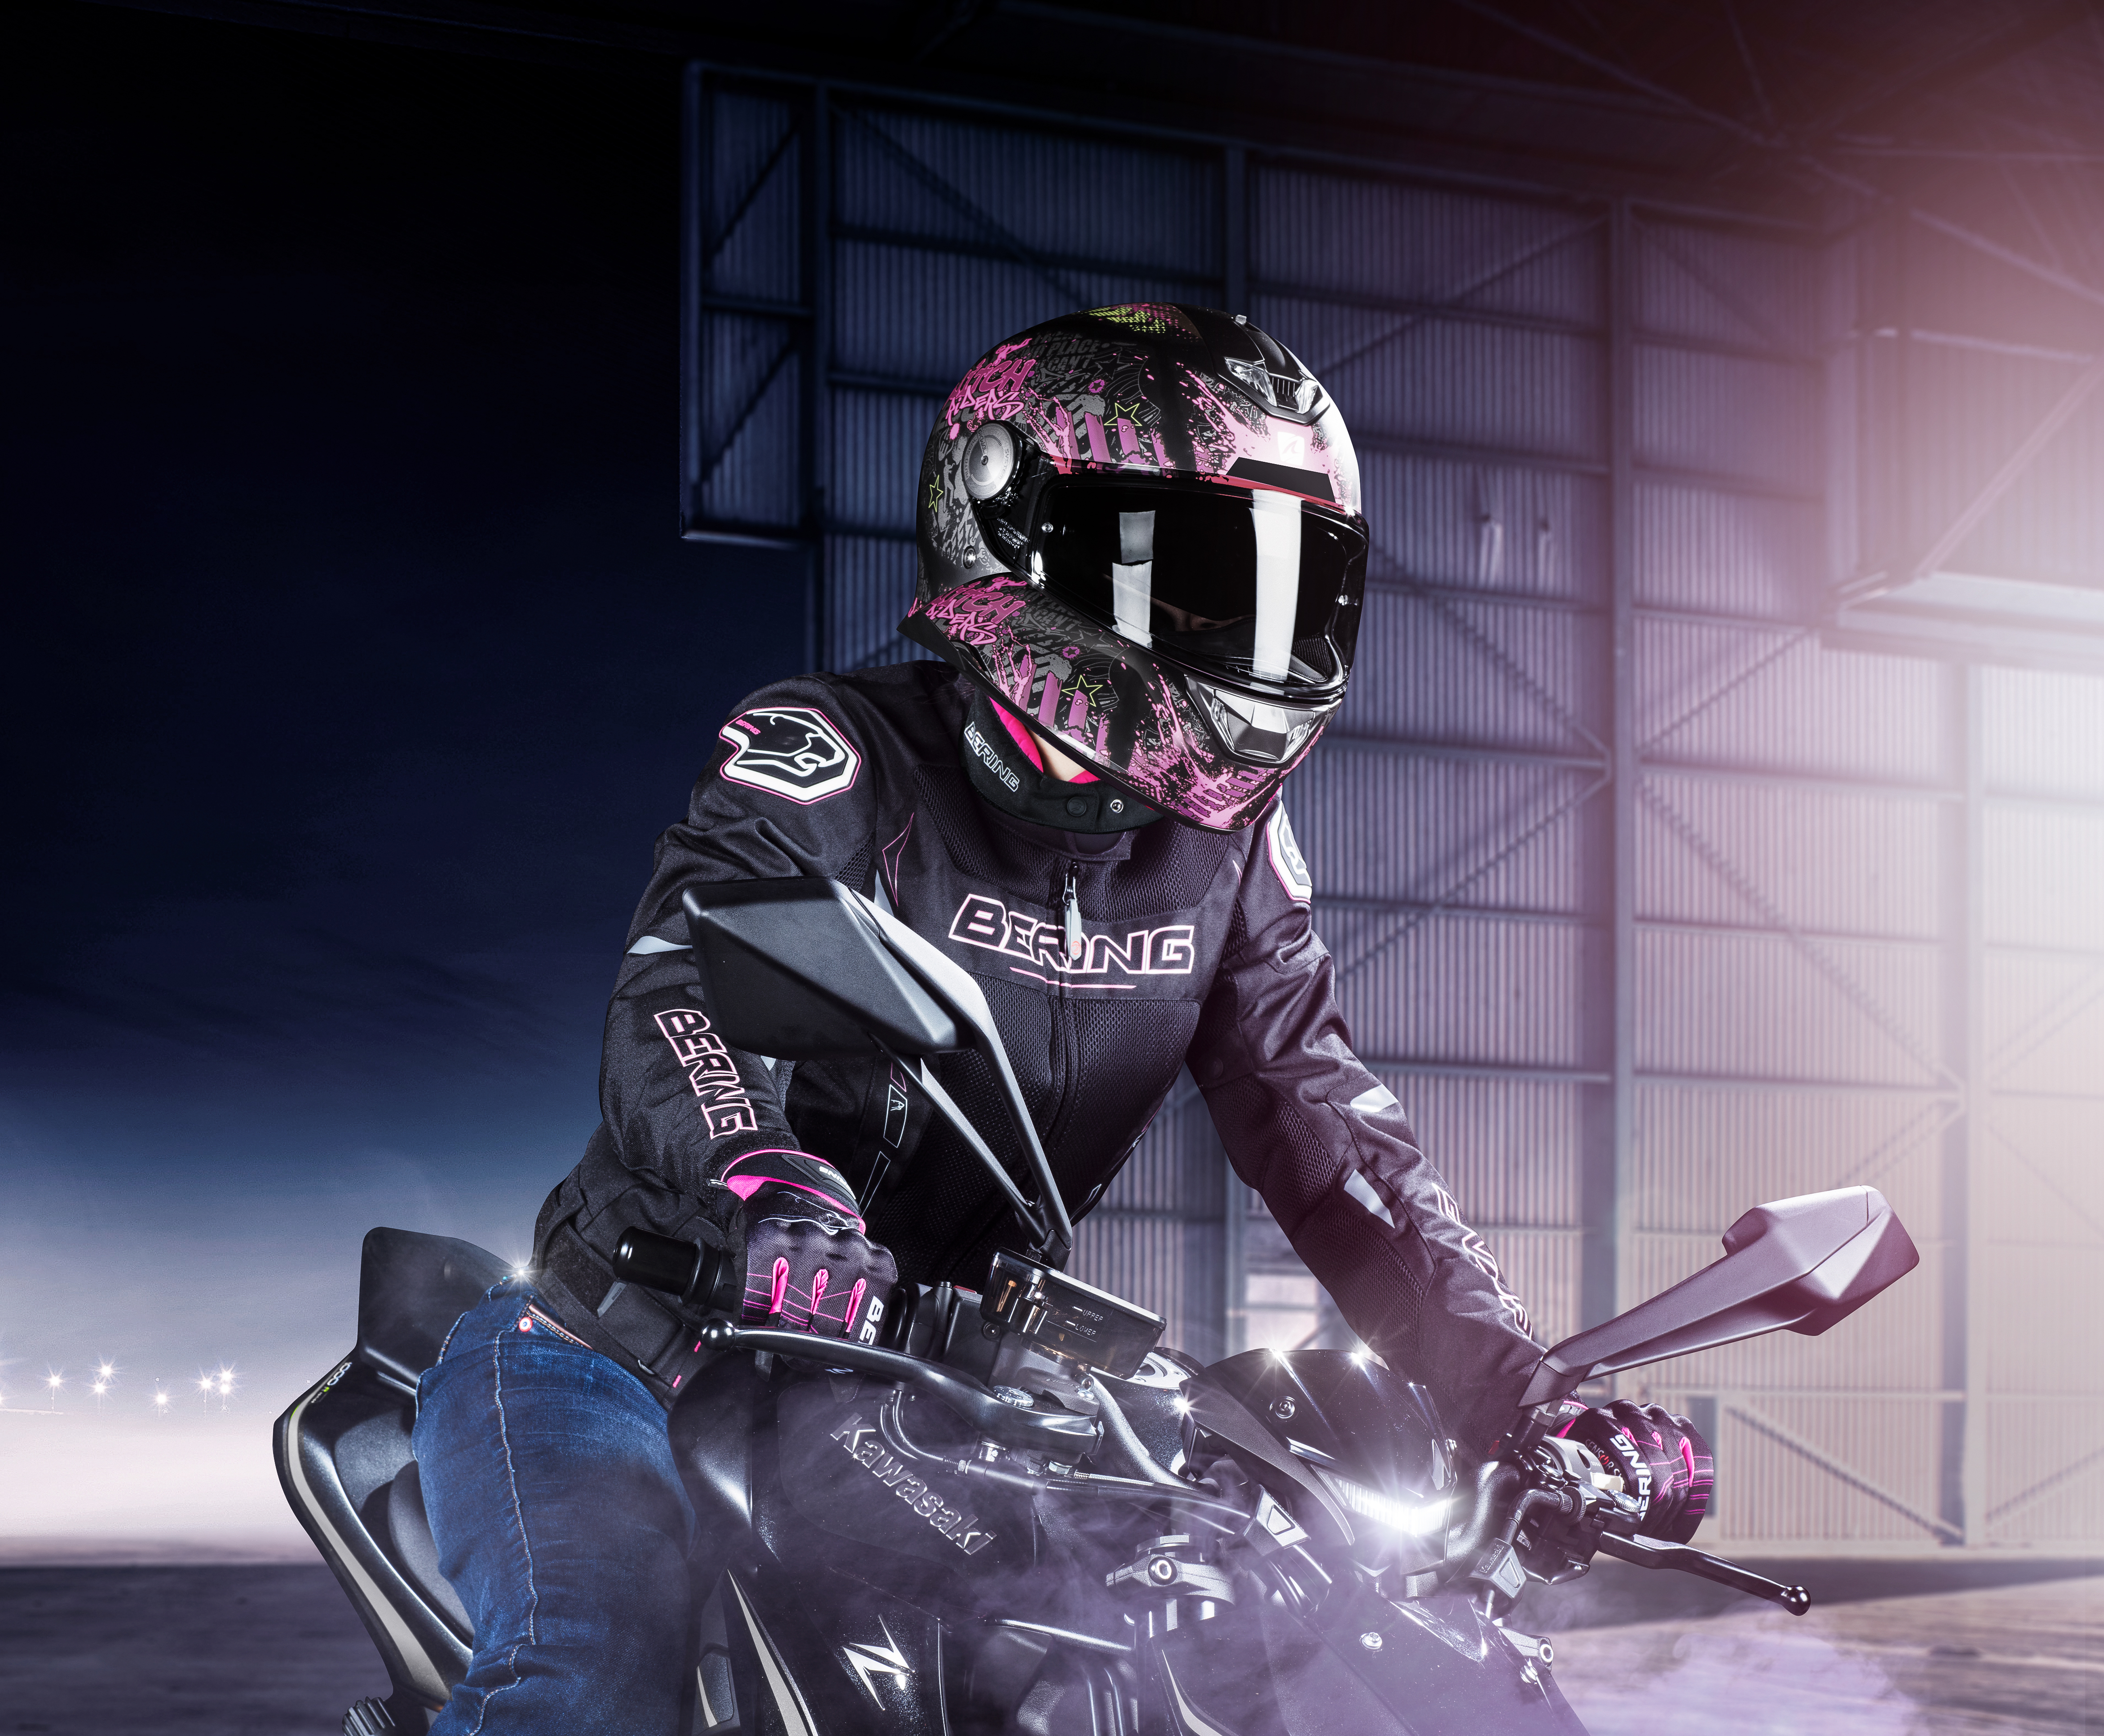 Etre féminine en moto : nos conseils – Moto au féminin : tout sur la moto